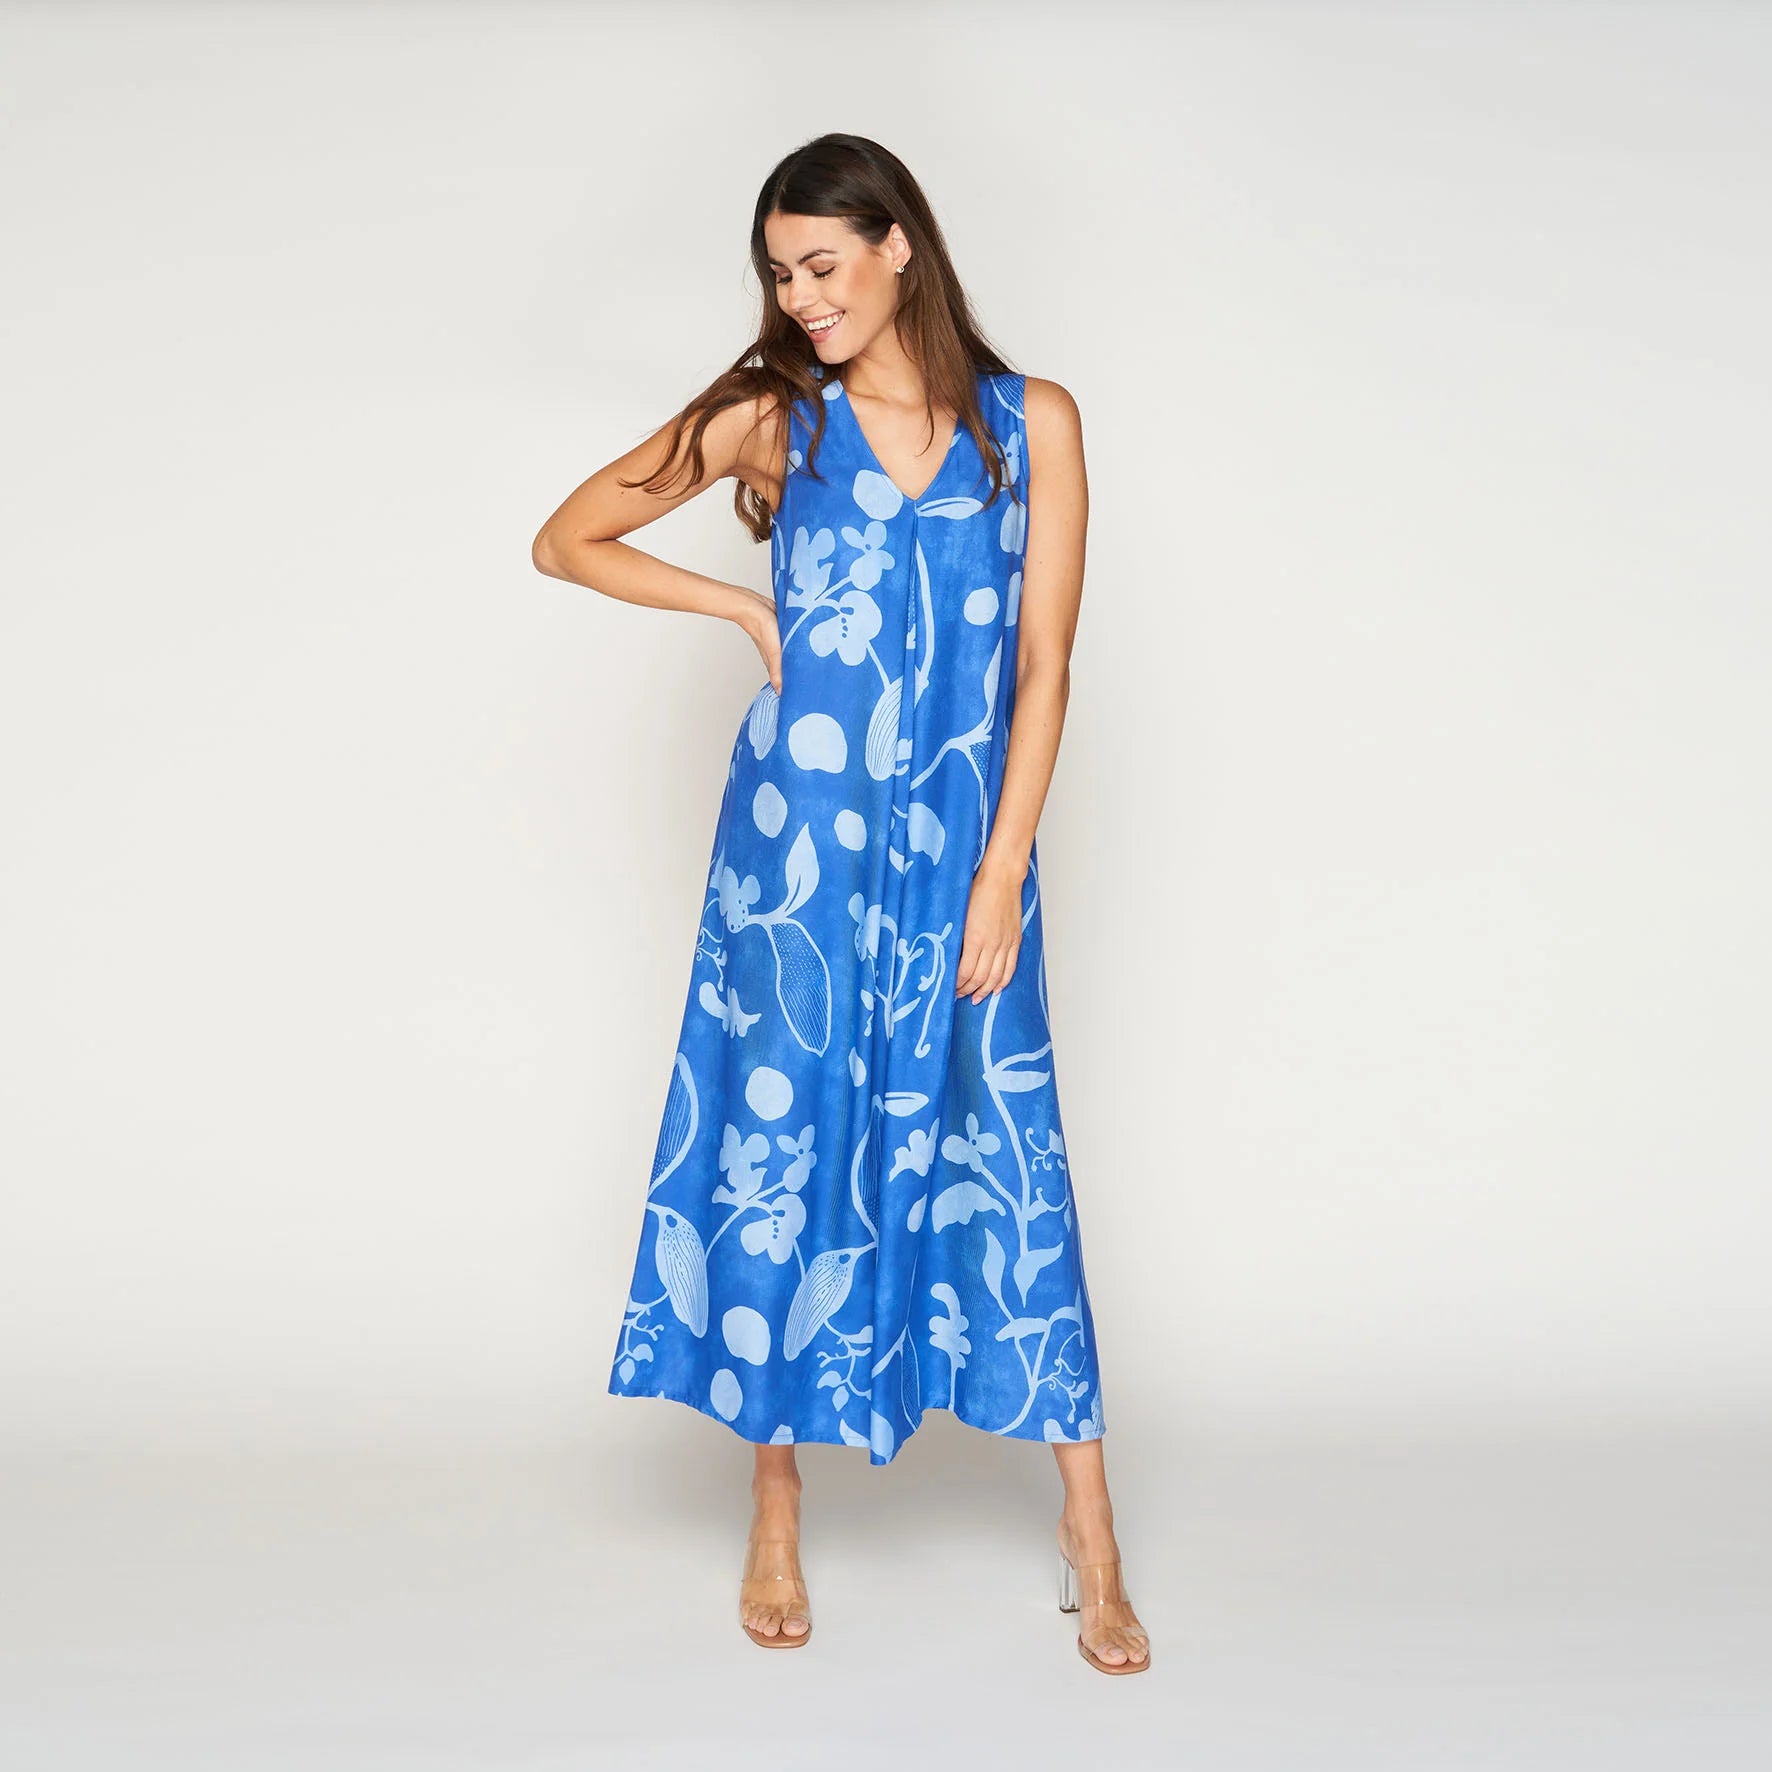 Blauwe mouwloze jurk met print